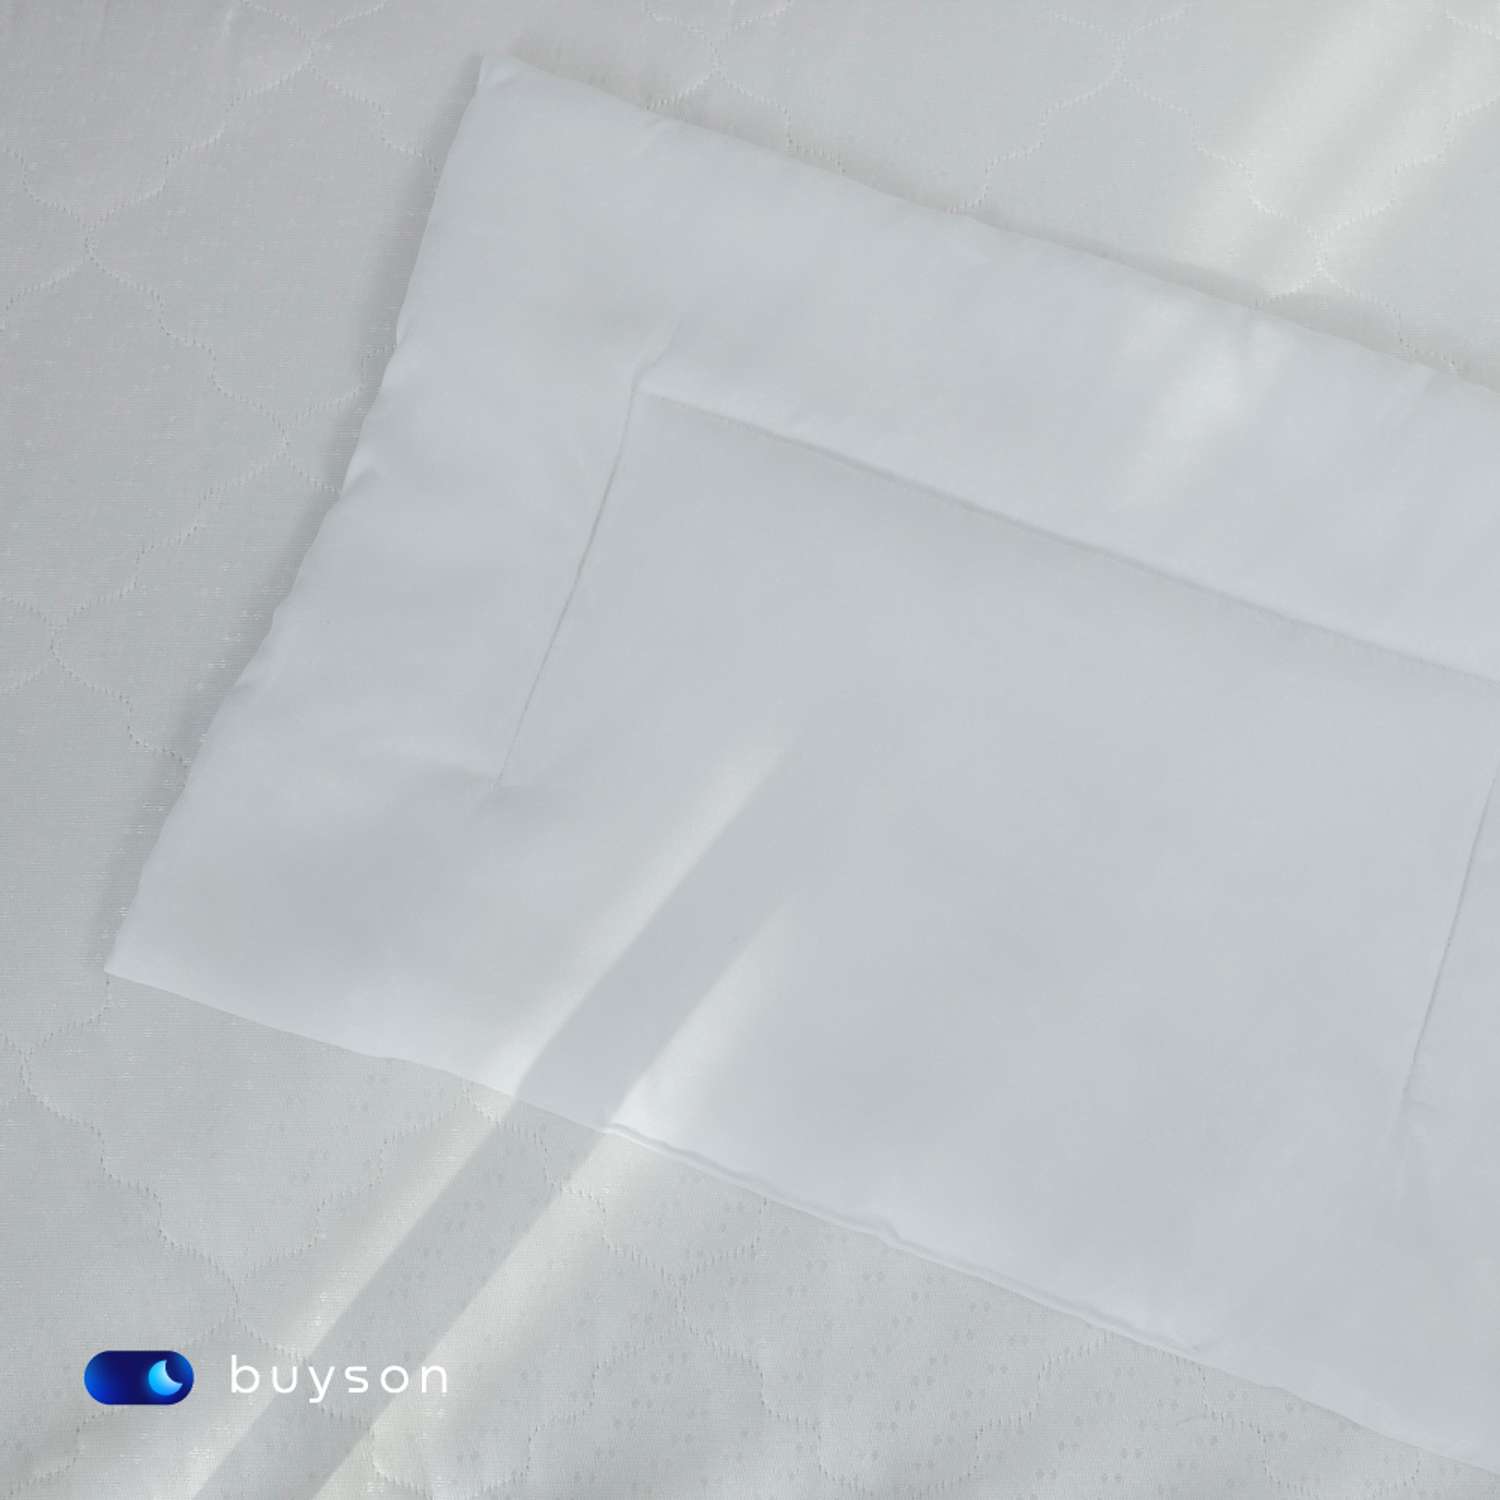 Анатомическая подушка buyson BuyMini для новорожденных от 0 до 3 лет 35х55 см высота 3 см - фото 5